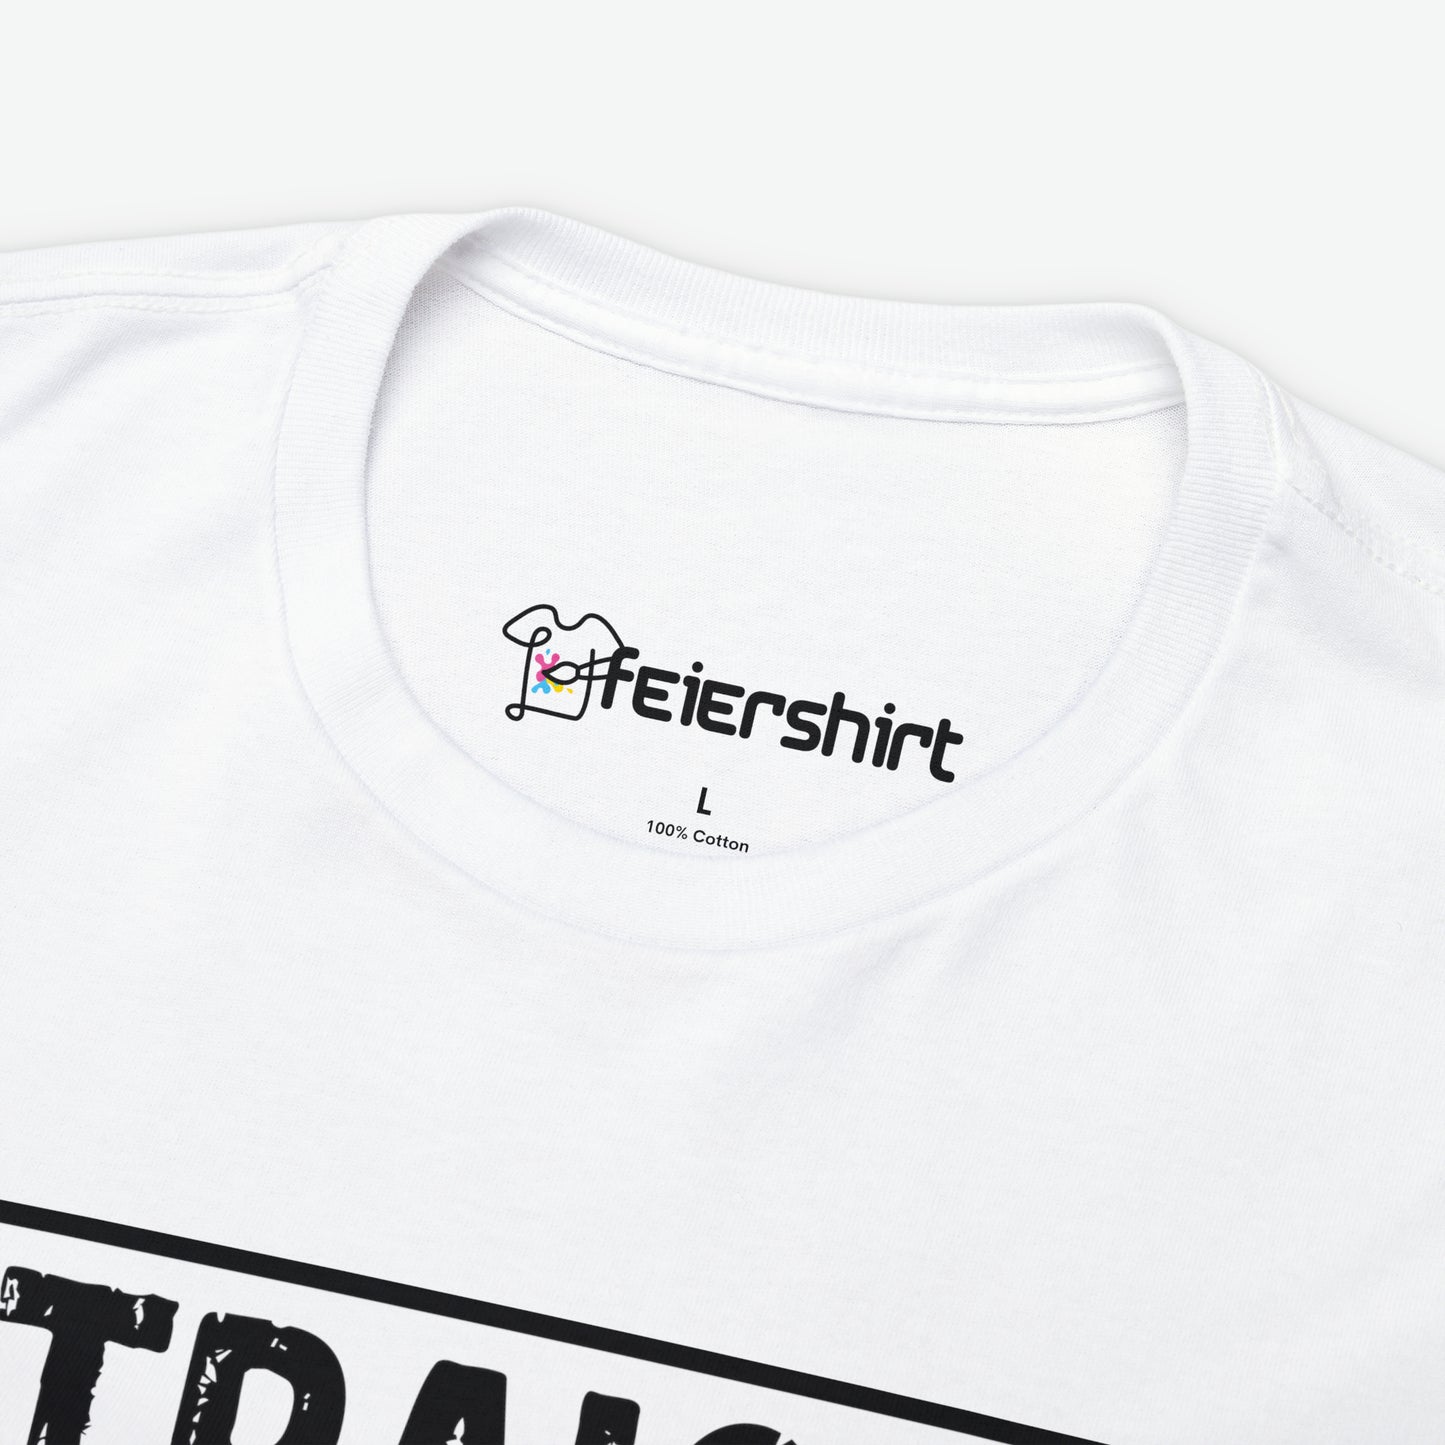 Premium Shirt Herren | Straight